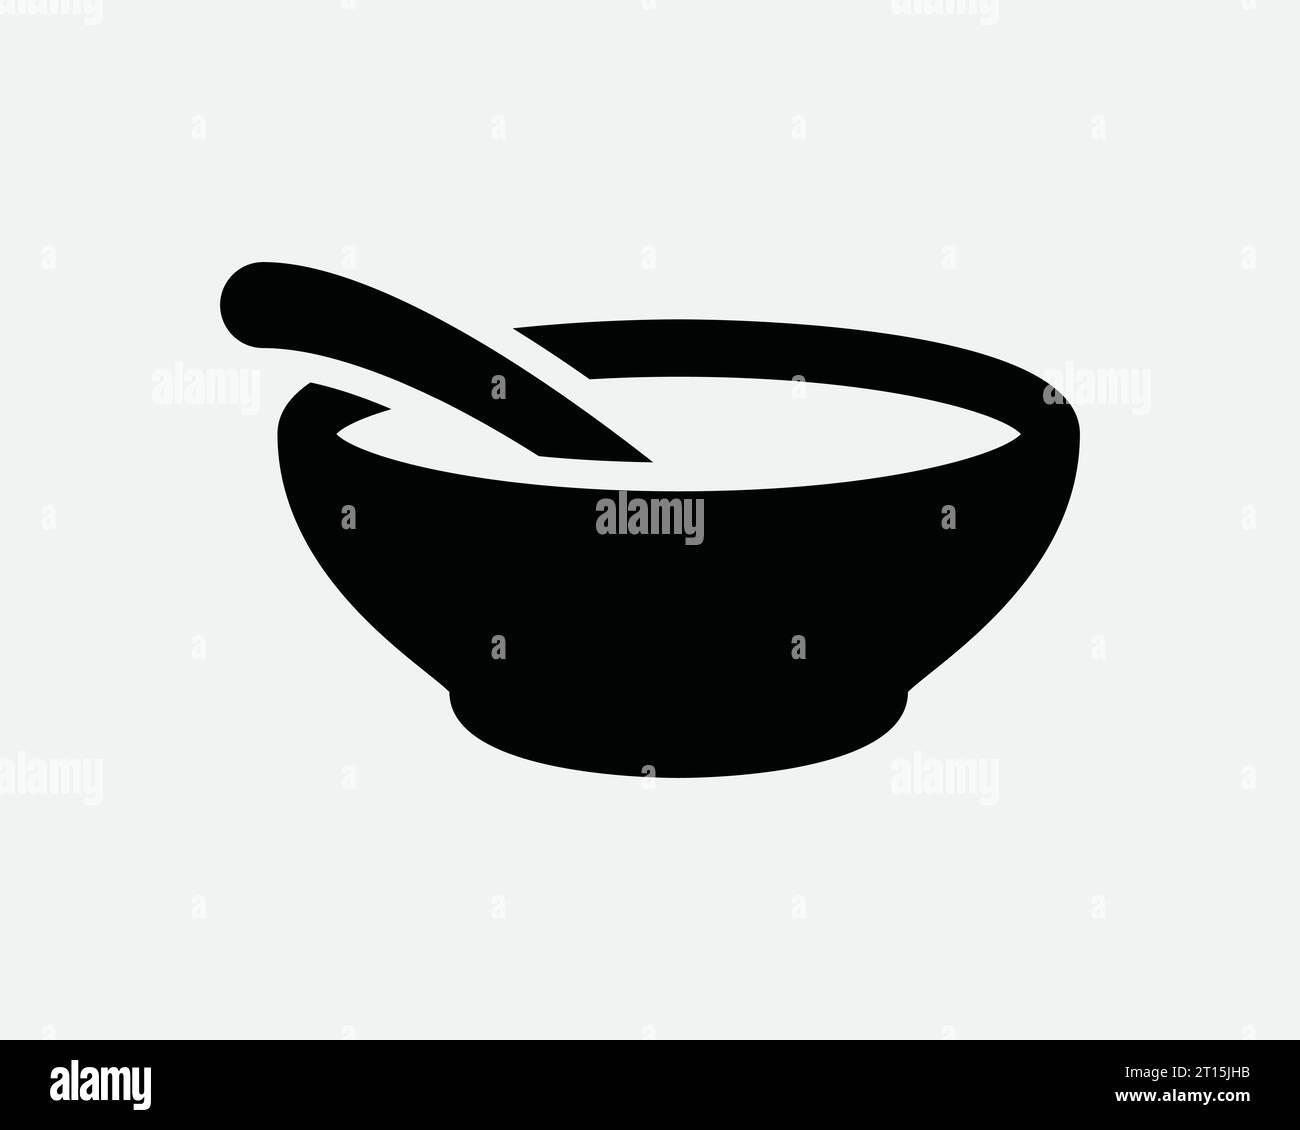 Food Bowl Icon Soup céréales cuillère cuisine cuisine repas Restaurant assiette petit déjeuner dîner Noir blanc Outline forme signe symbole EPS Vector Illustration de Vecteur